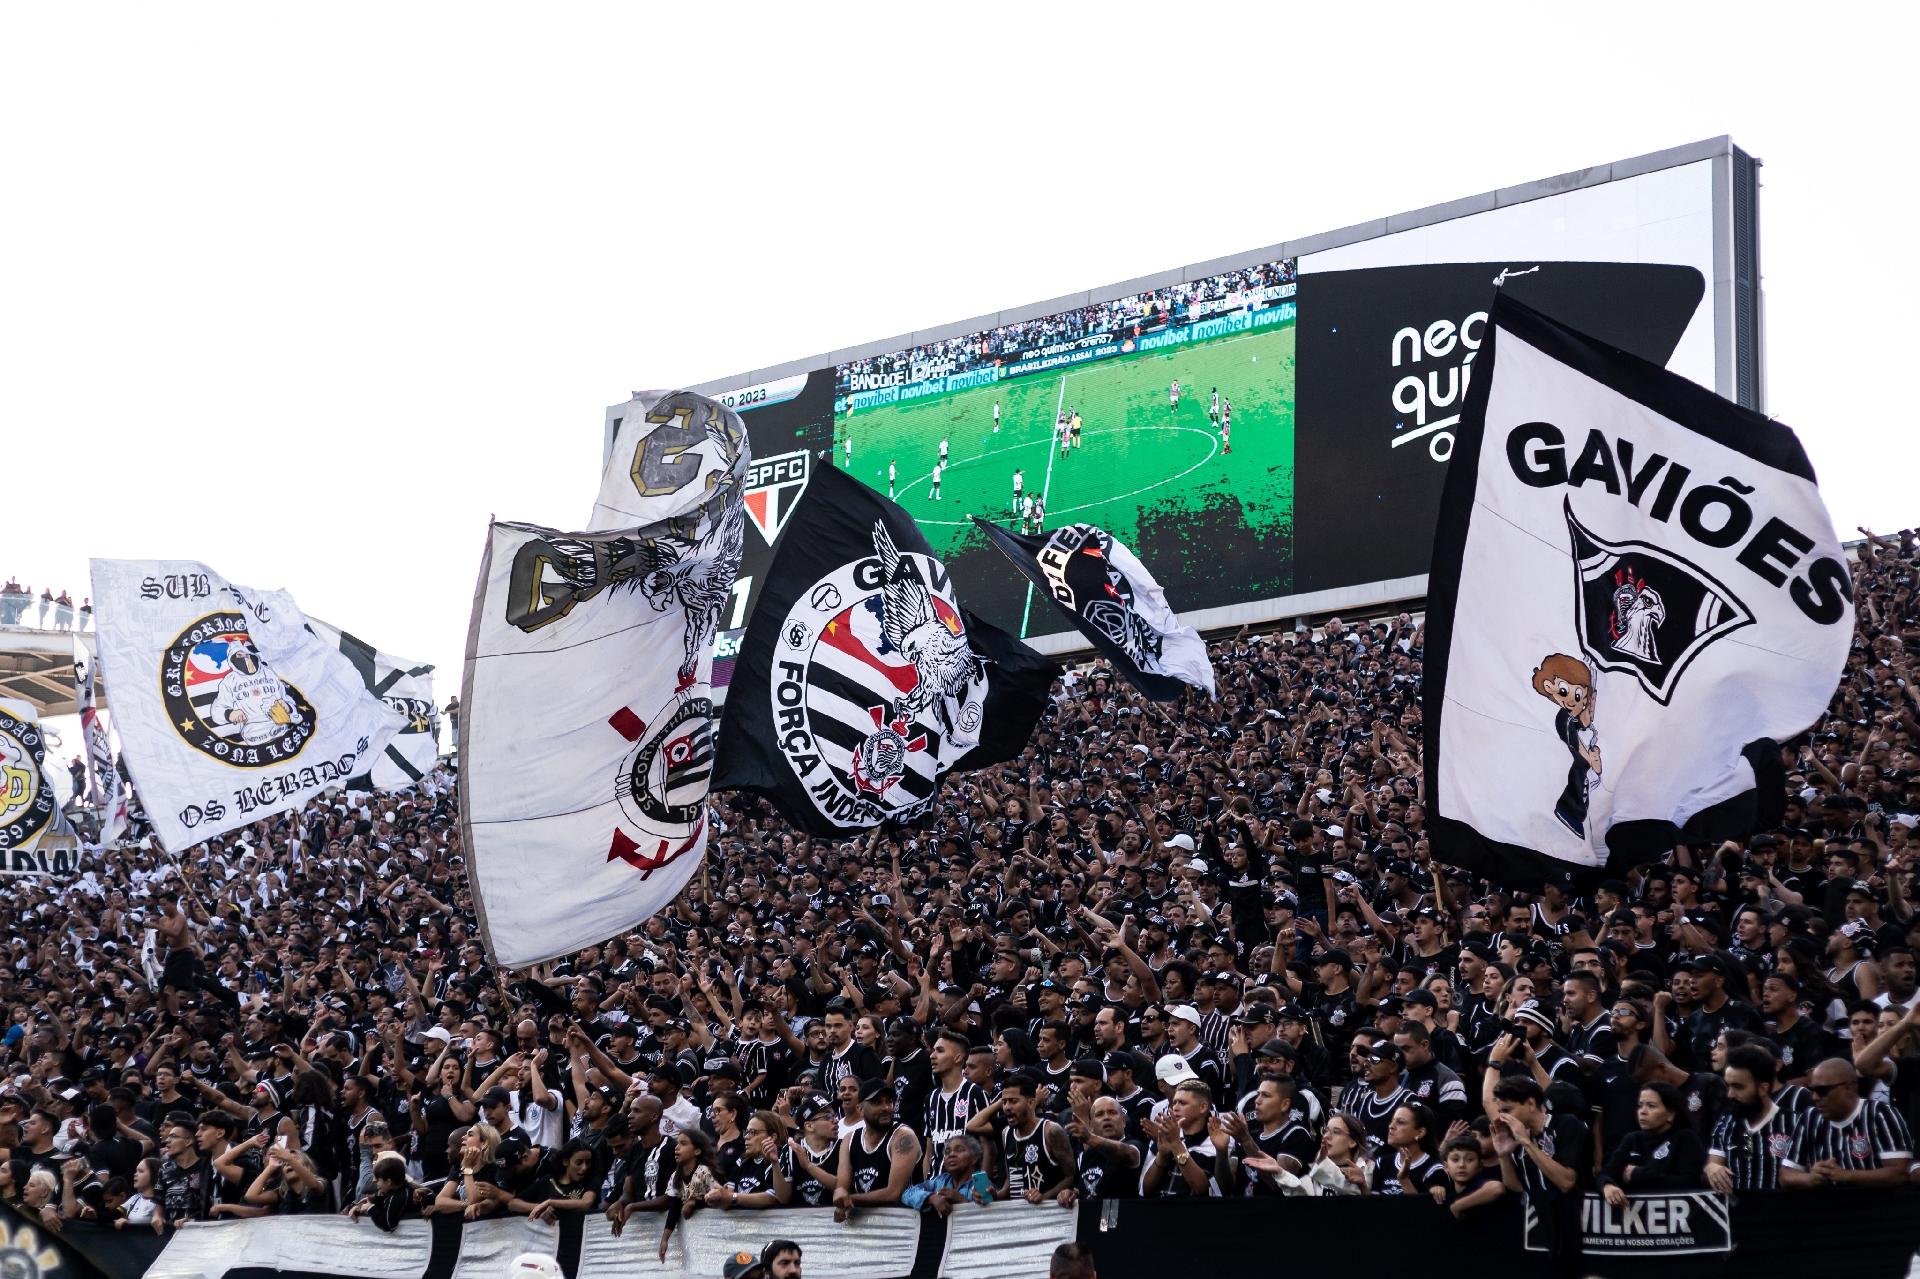 O Corinthians se recusou a vender ingressos online para a torcida do Flu e  vai vender apenas 2 horas antes do jogo no próprio estádio : r/futebol